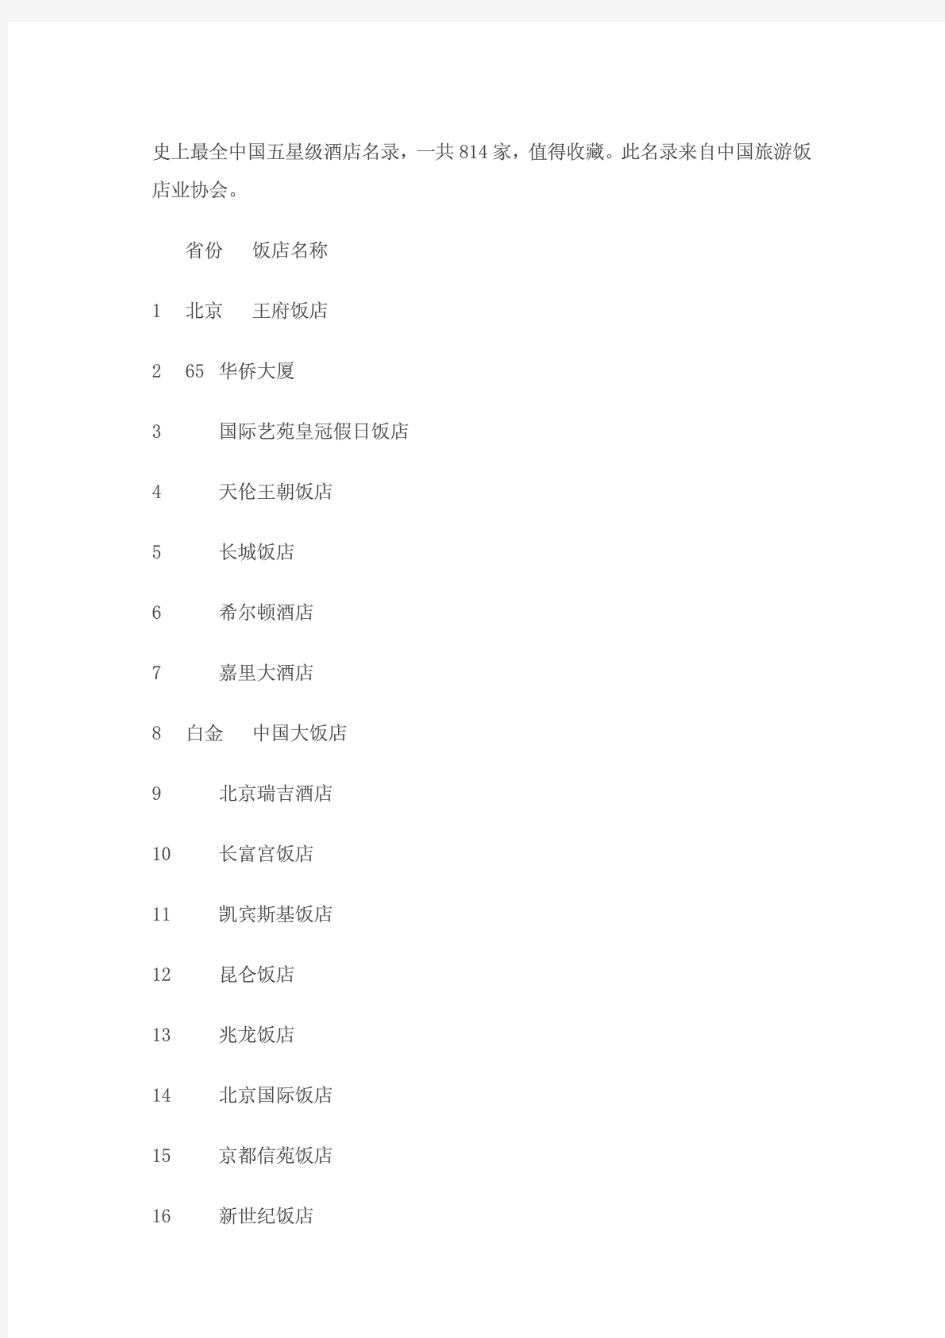 史上最全中国五星级酒店名录(814家)